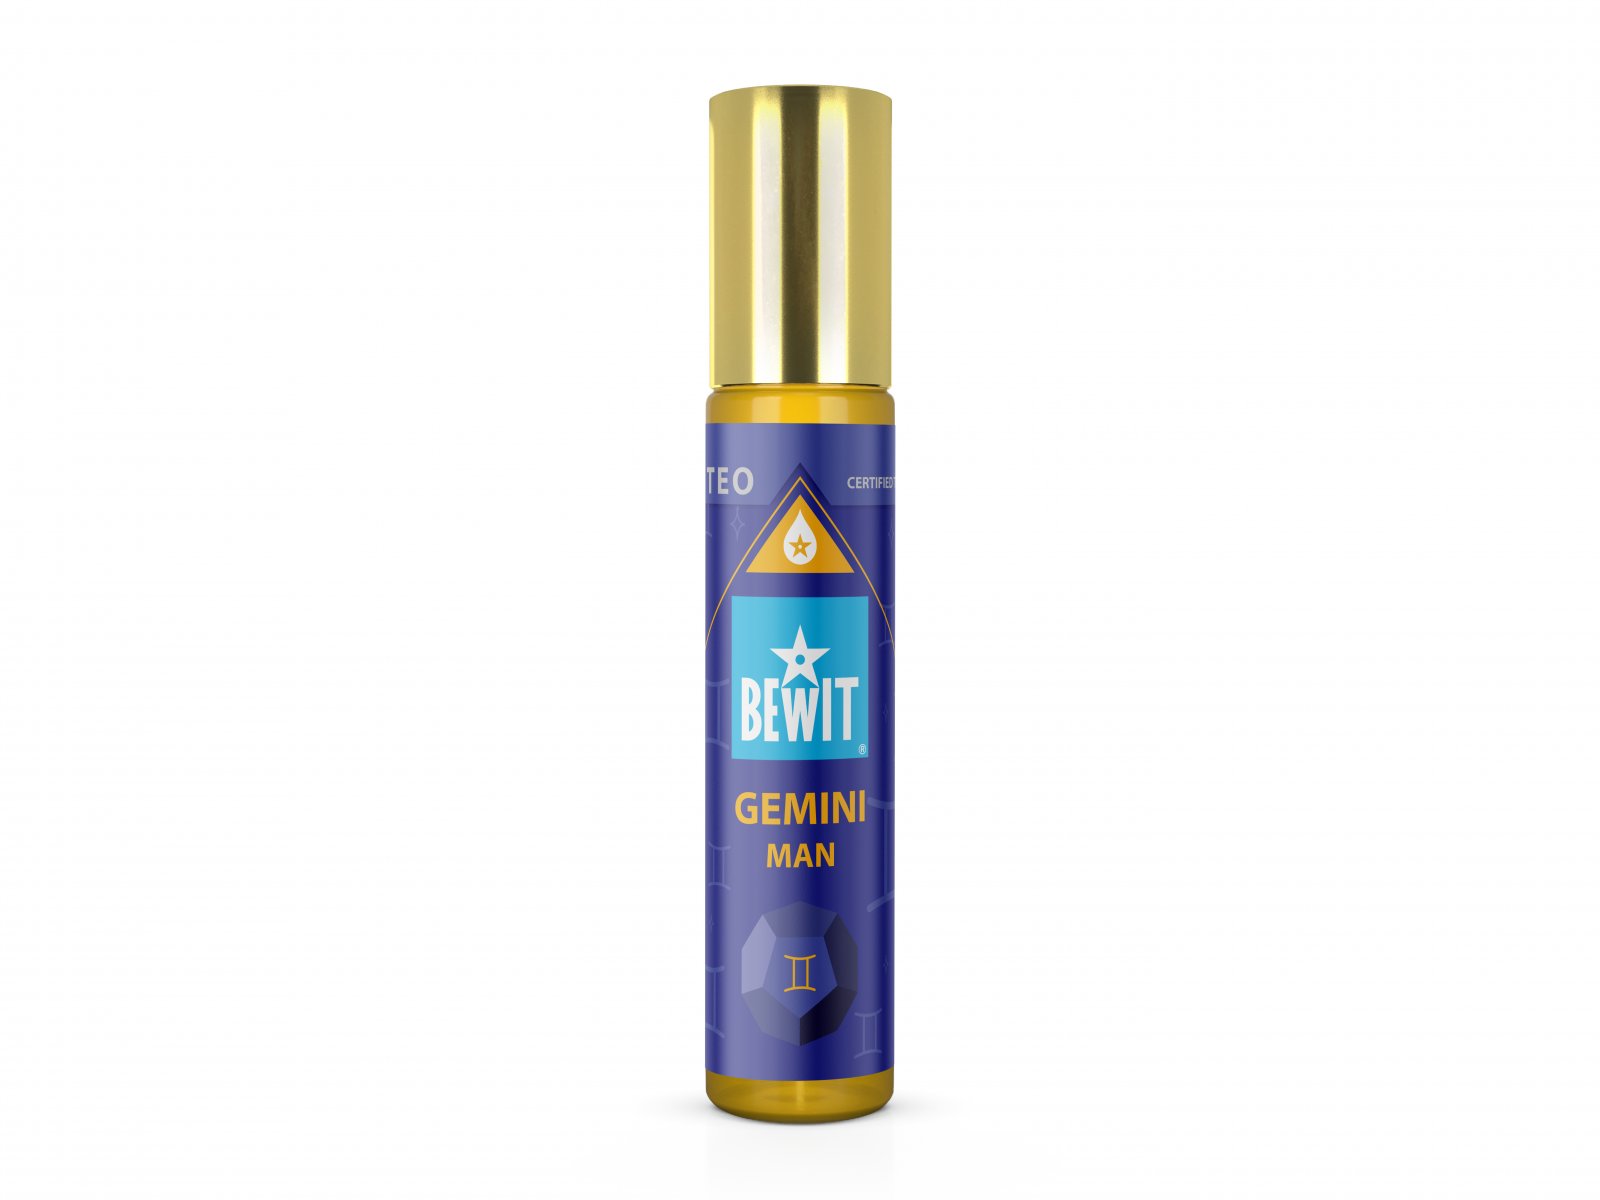 BEWIT MAN GEMINI (BLÍŽENCI) - Mužský roll-on olejový parfém - 1